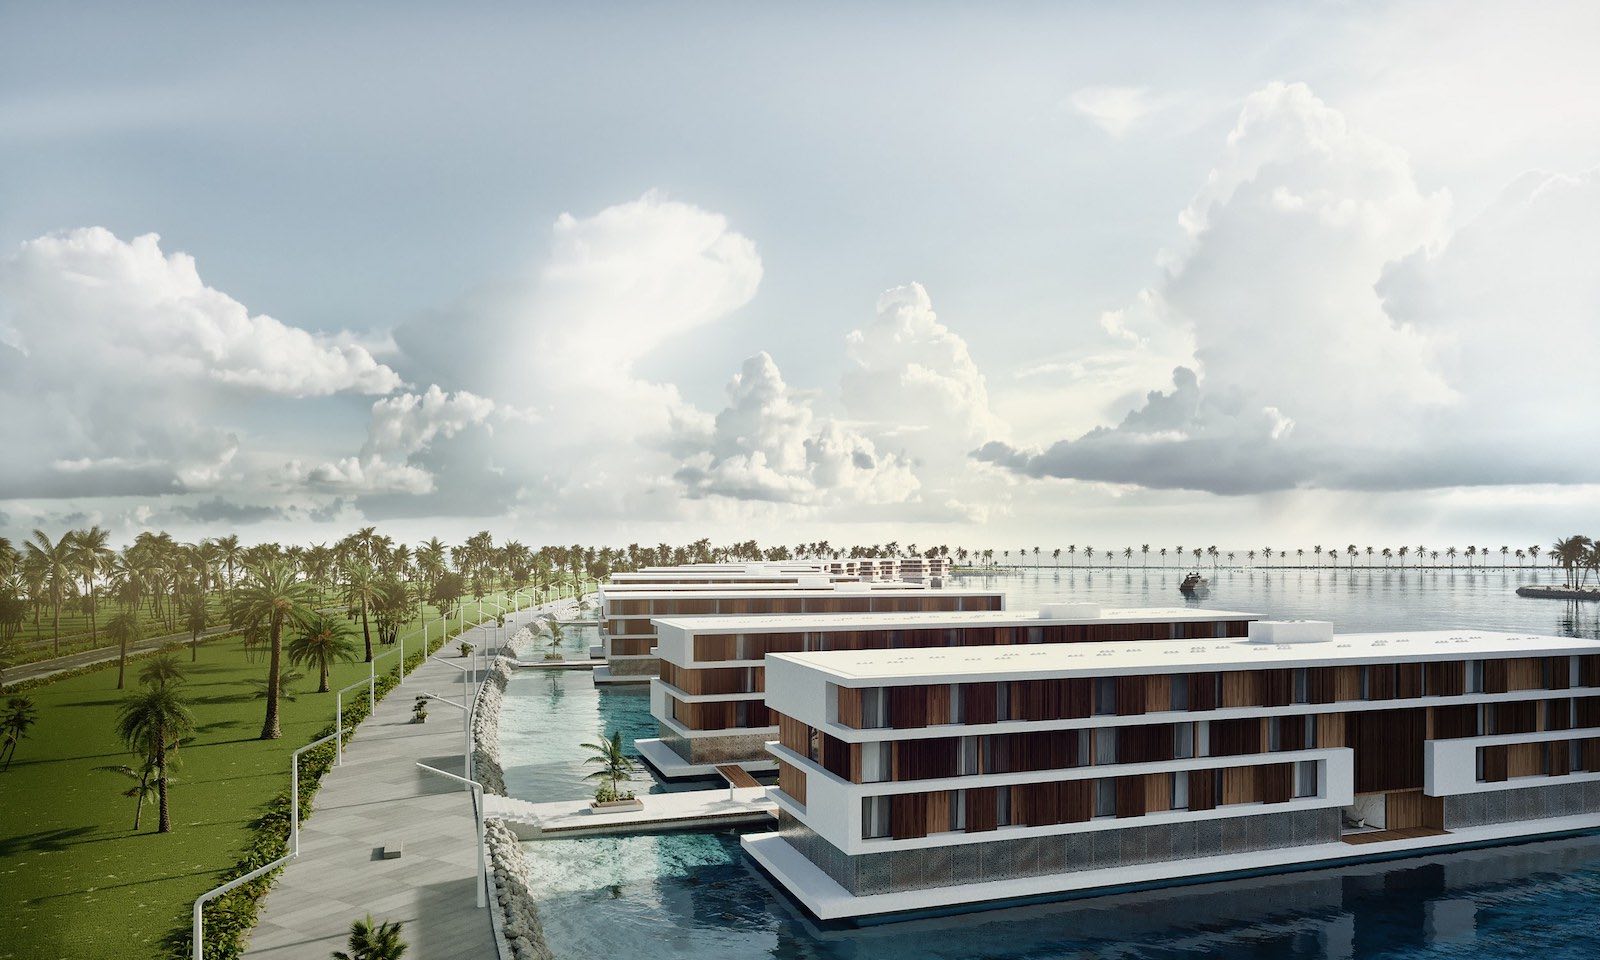 Durante la Copa Mundial FIFA 2022 en Catar, los fanáticos podrán alojarse en estos innovadores y espectaculares hoteles flotantes